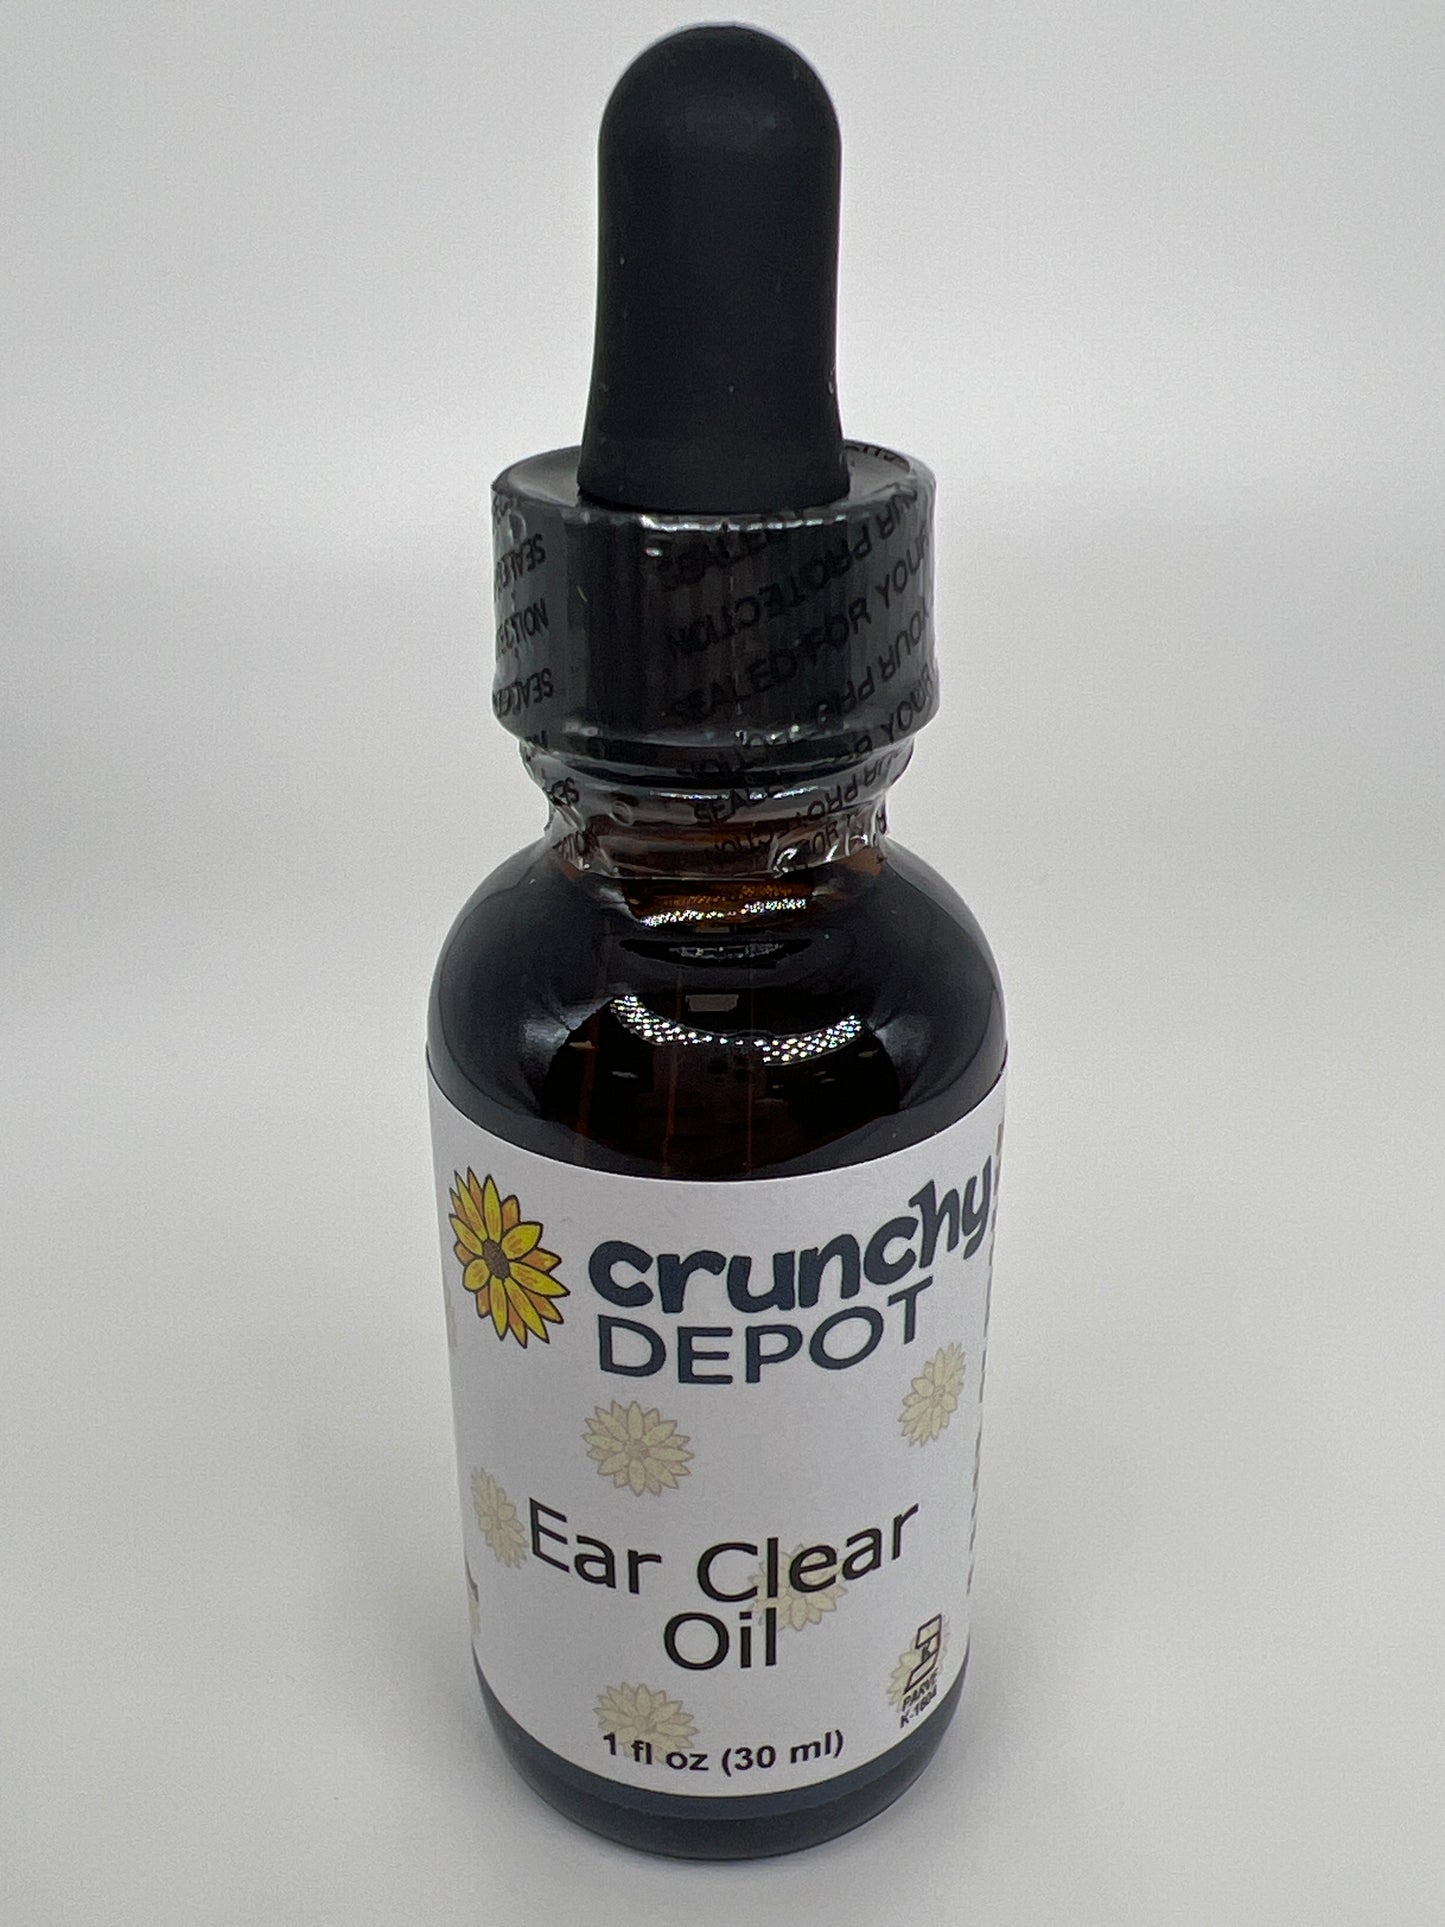 Ear Clear Oil